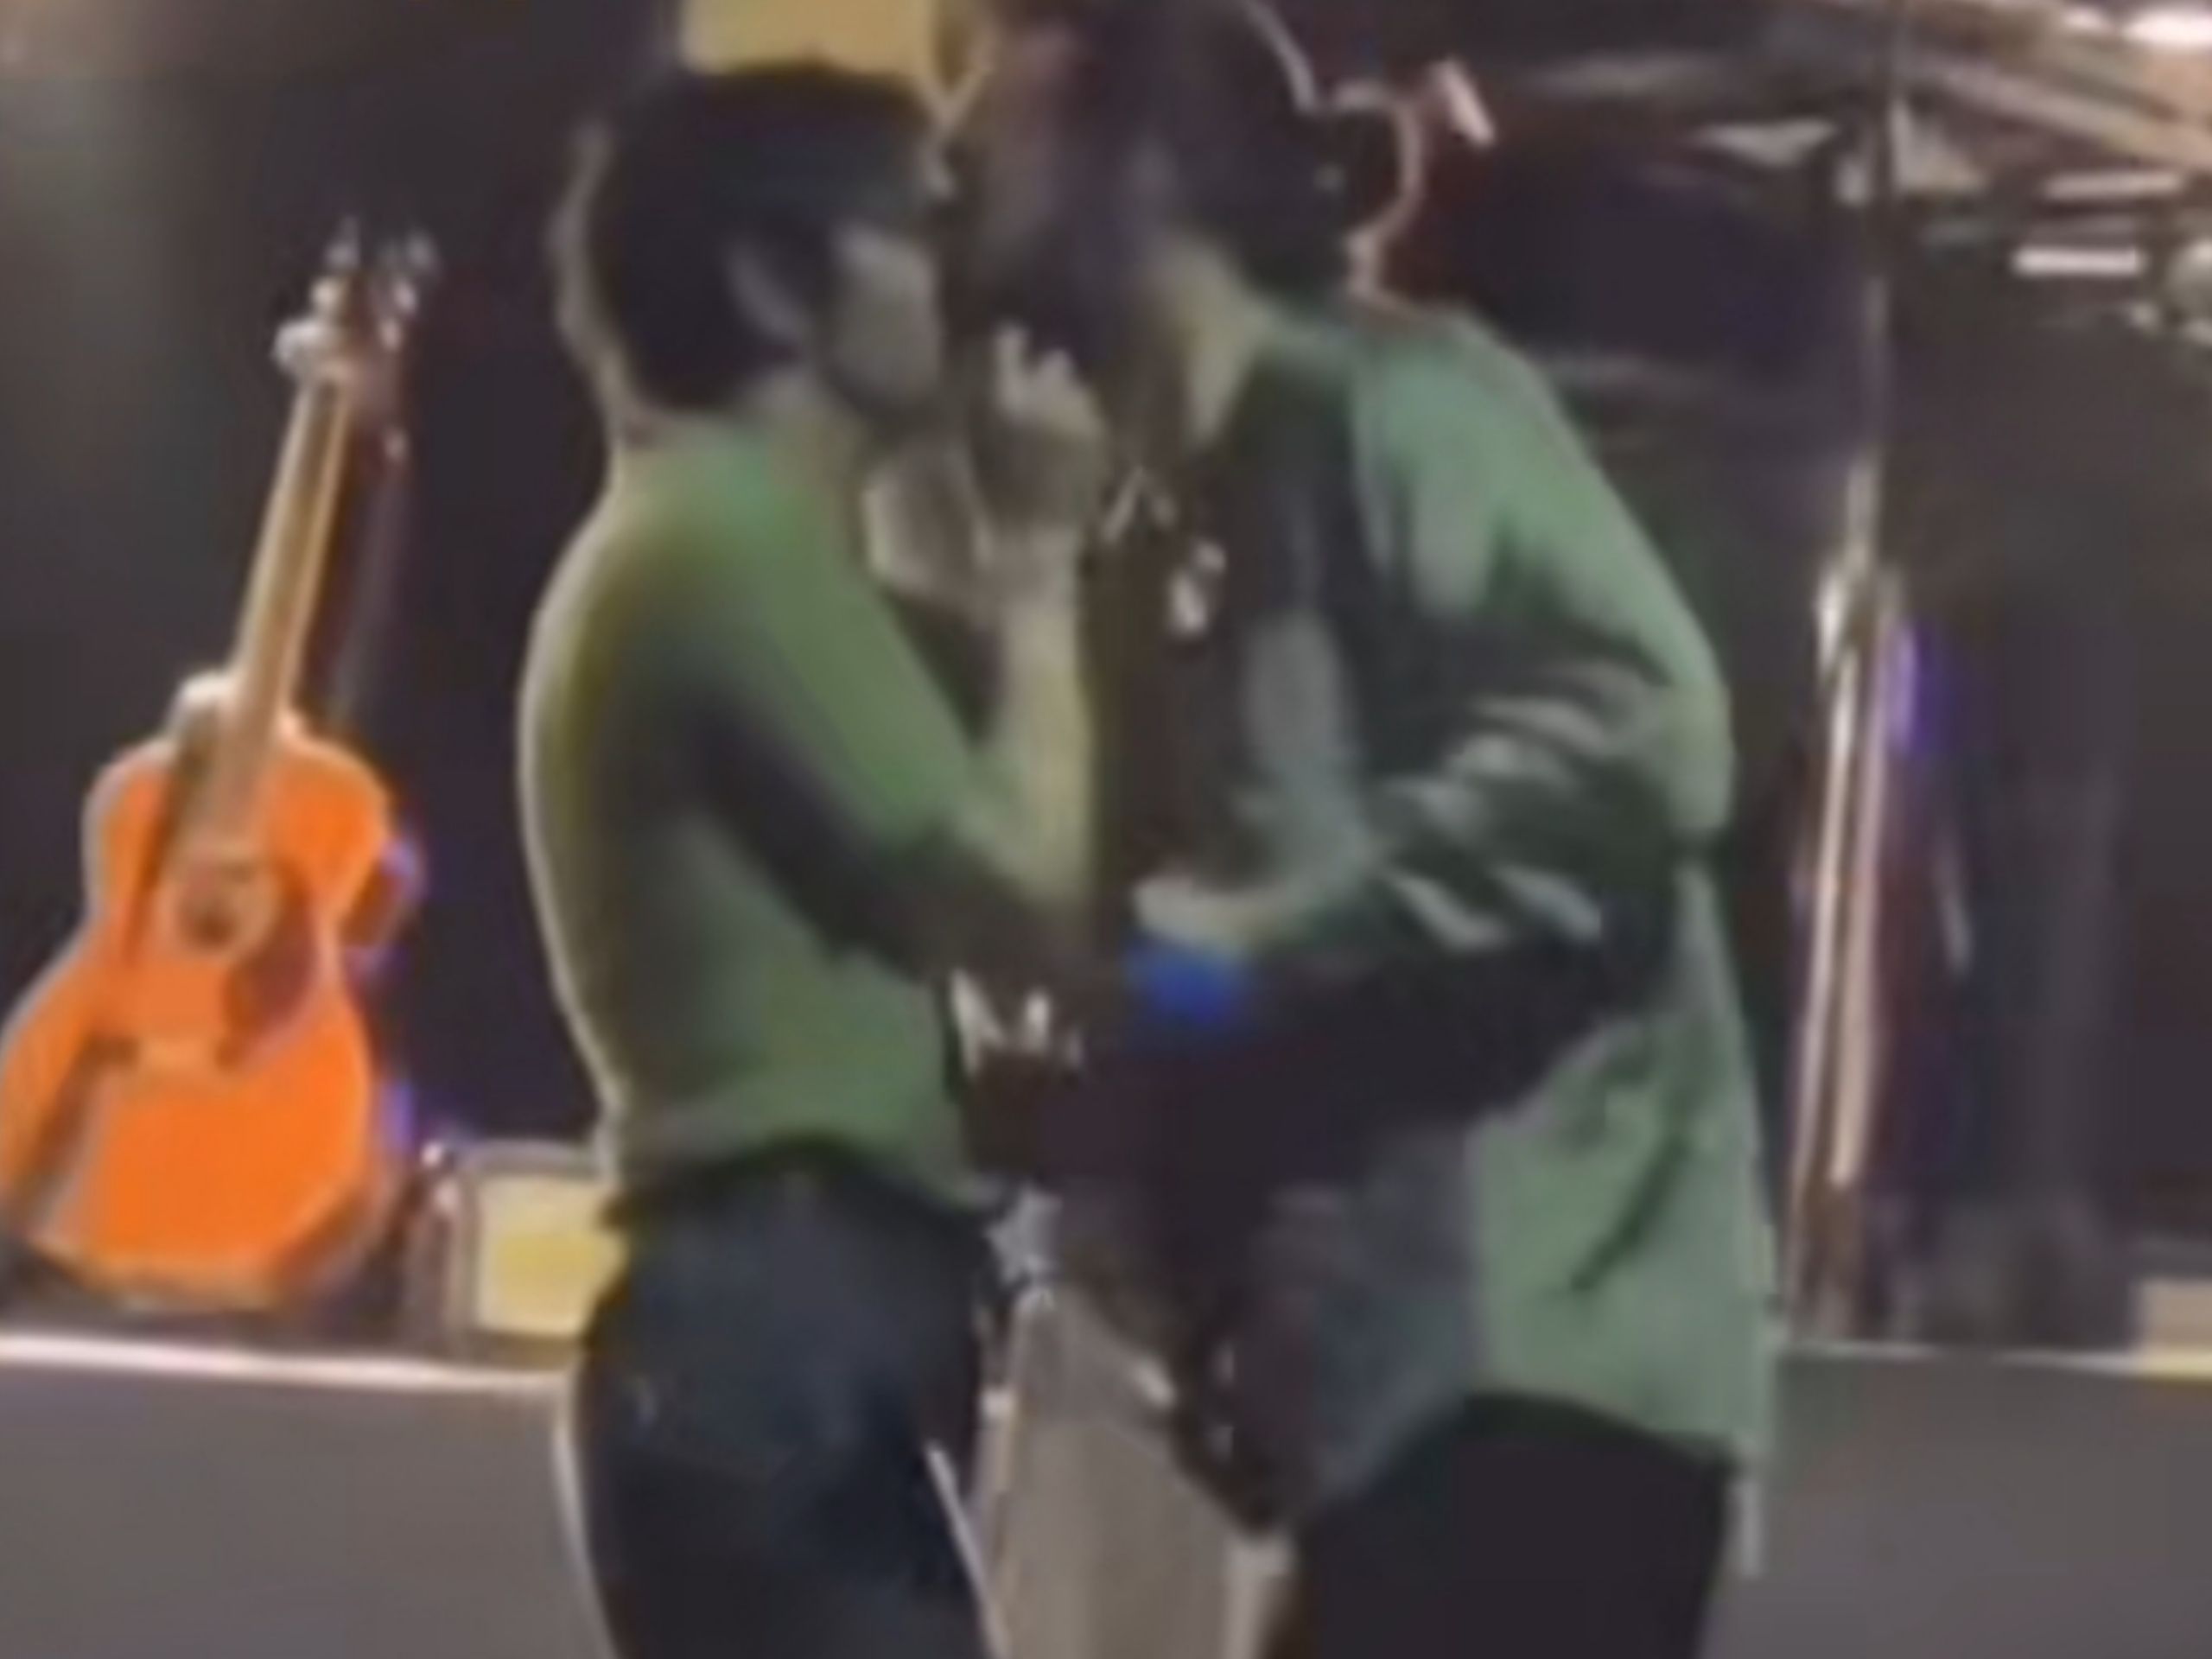 Matty Healy dari The 1975, dilarang tampil di Malaysia setelah melakukan ciuman sesama pria